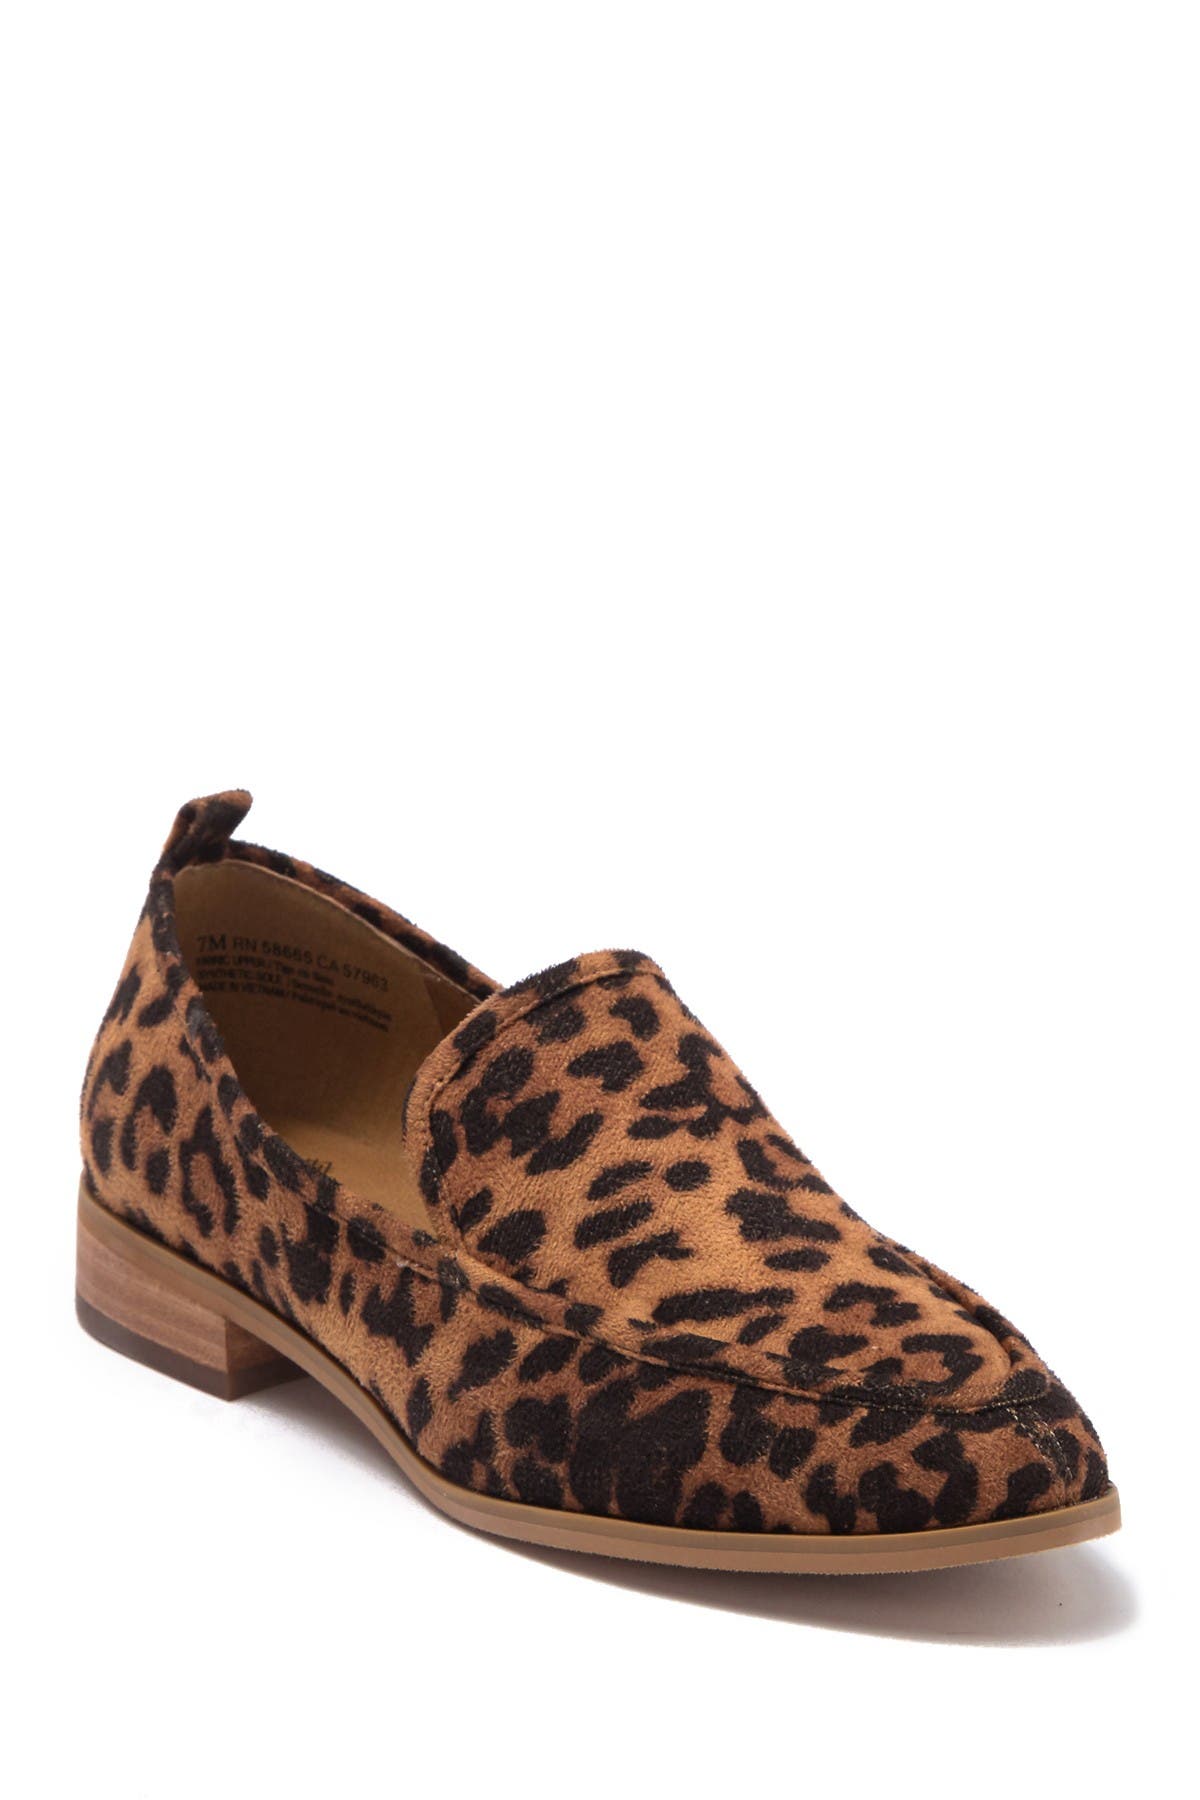 womens wide width leopard shoes